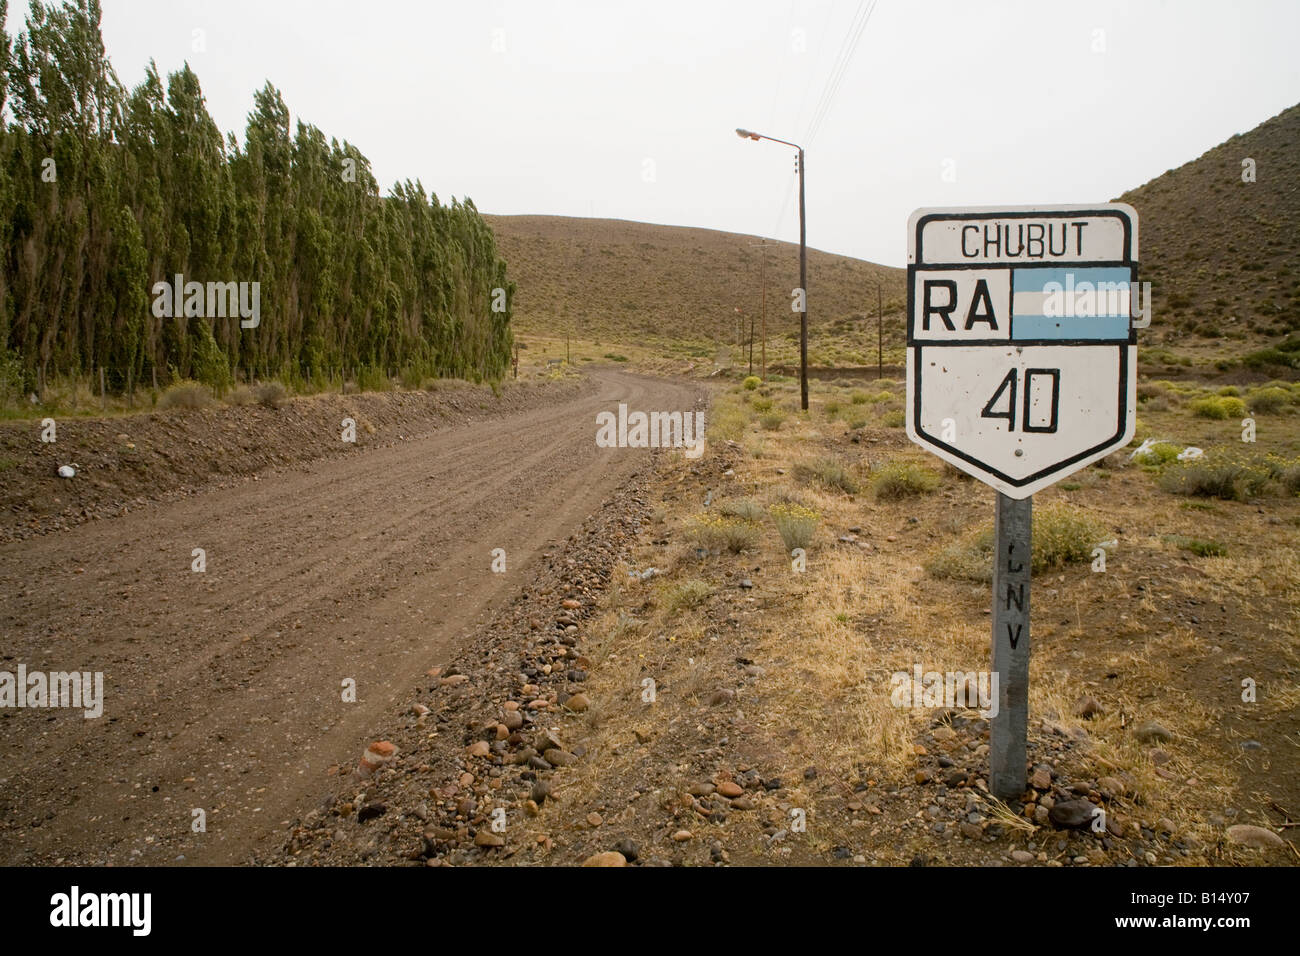 Ruta nacional 40 road sign, Argentine Banque D'Images